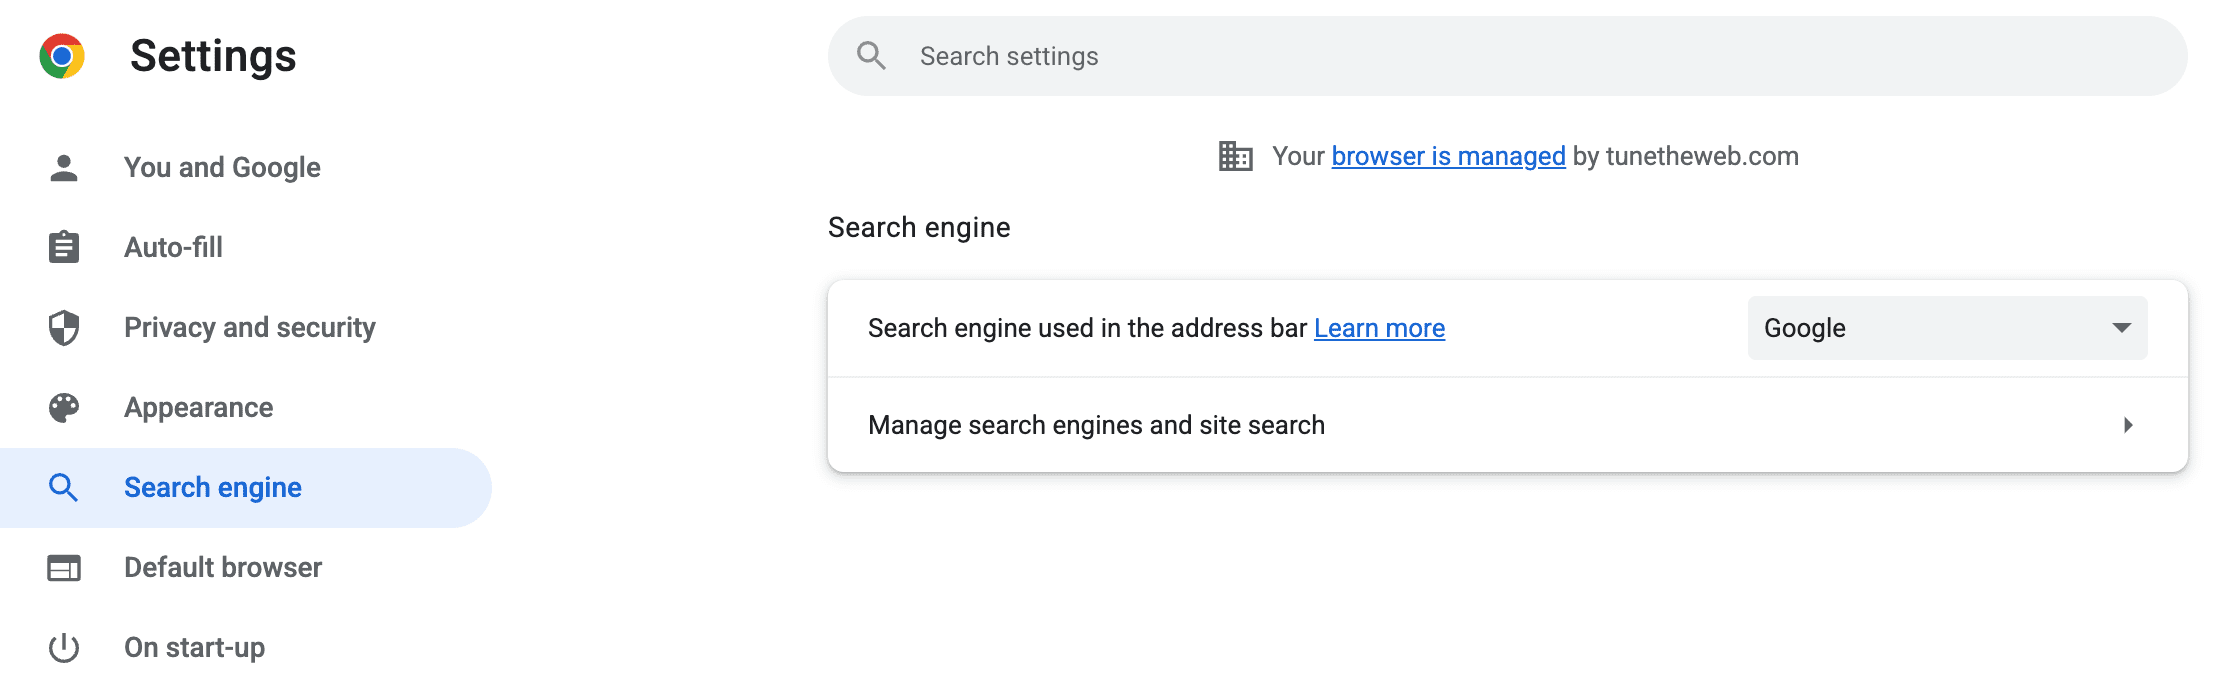 عکس صفحه تنظیمات کروم برای صفحه موتورهای جستجو که می توانید موتورهای جستجو و جستجوی سایت را مدیریت کنید